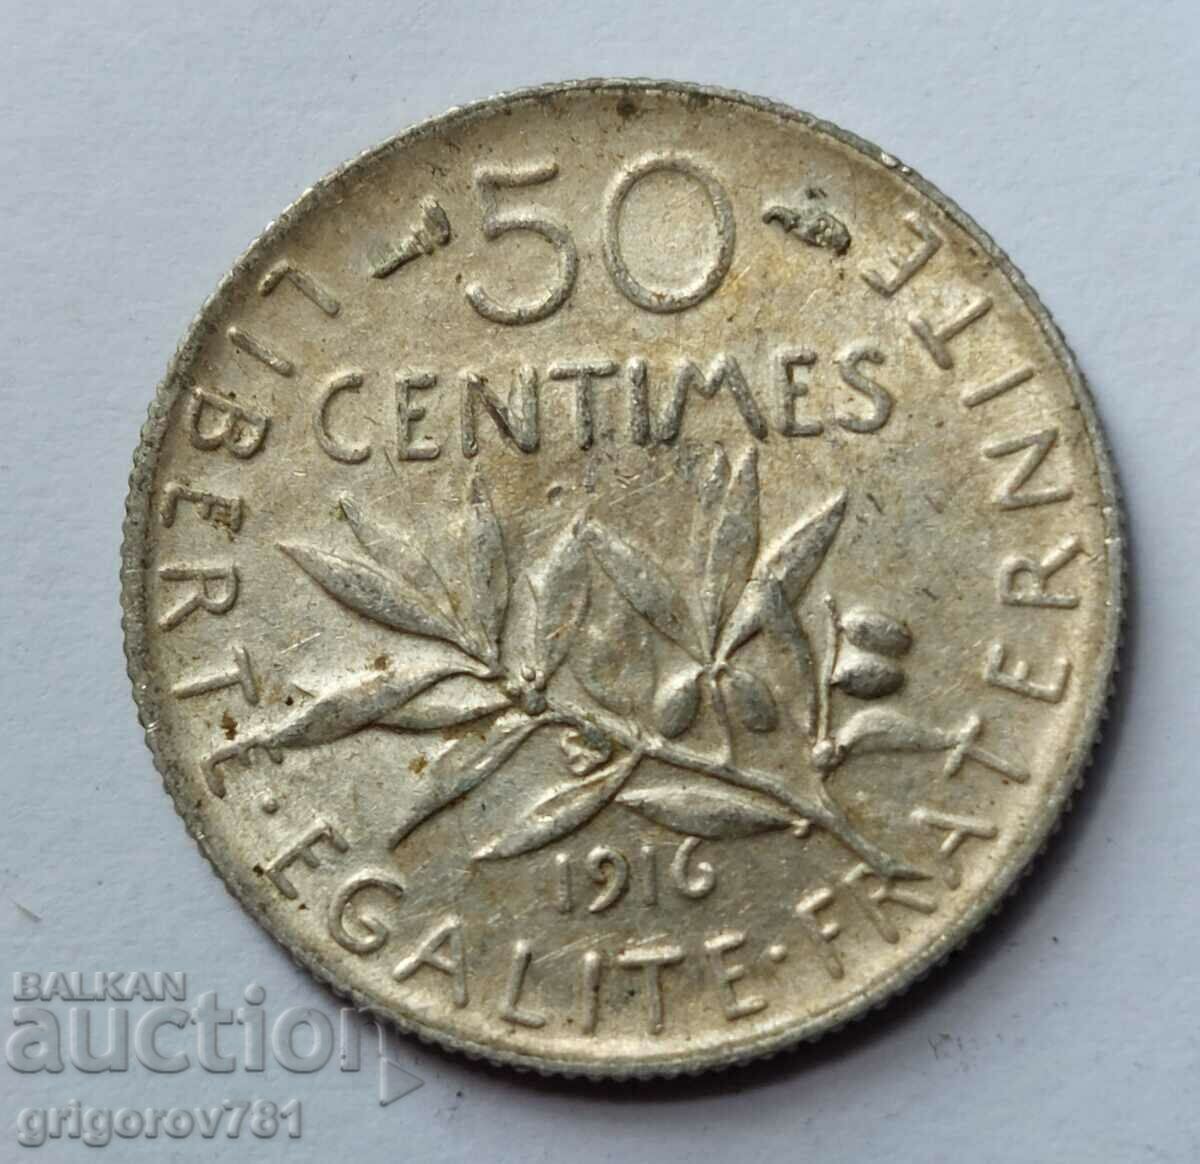 Ασημένιο 50 εκατοστά Γαλλία 1916 - ασημένιο νόμισμα №11